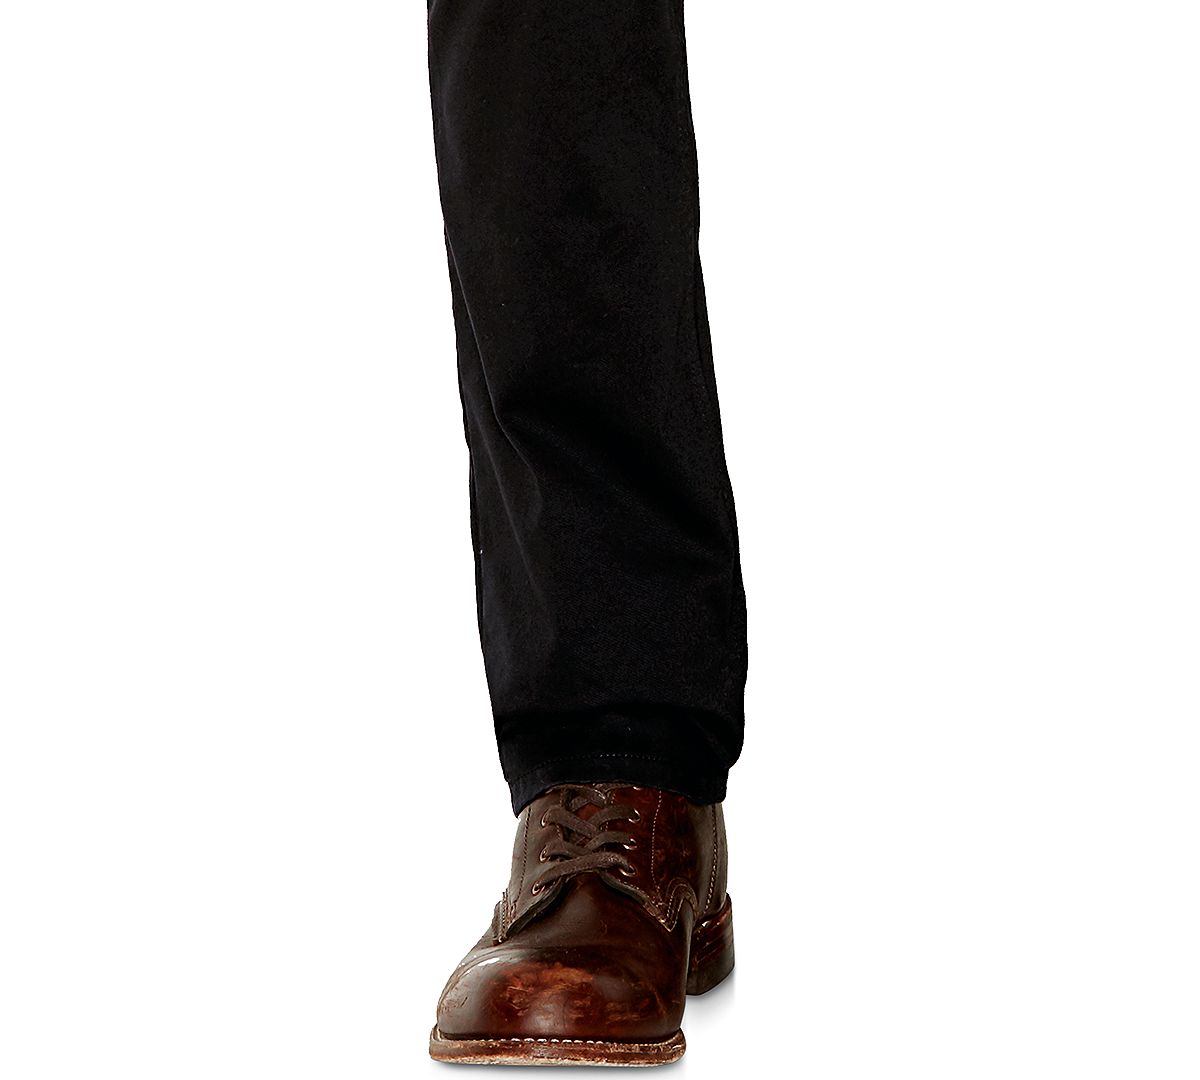 Levi's 511™ Slim Fit Hybrid Trousers Black - Waterless